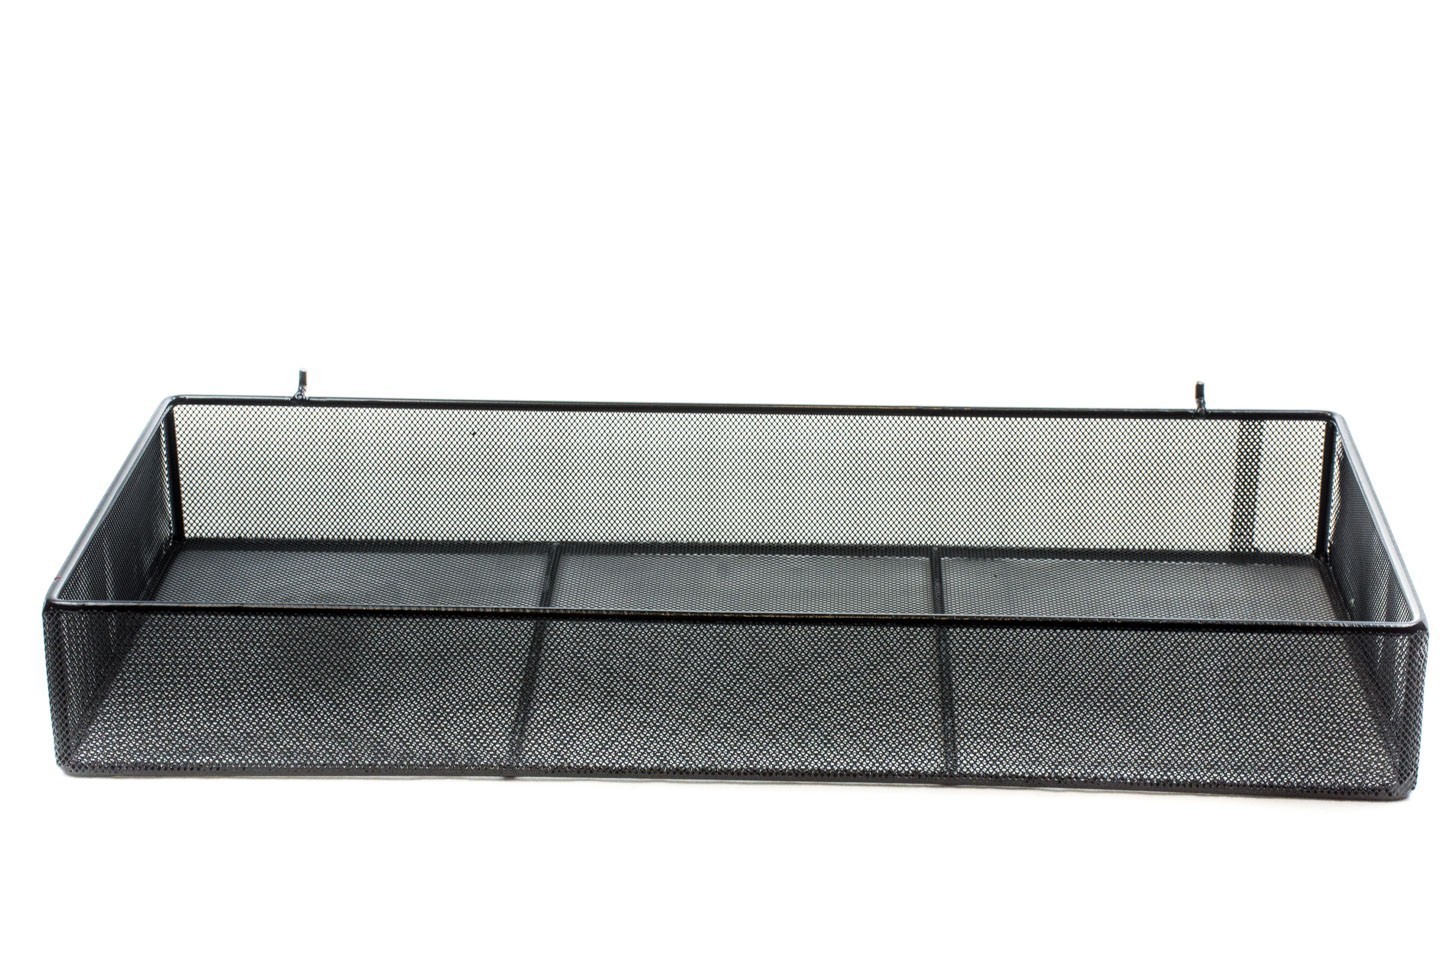 Cesta colgante con rejilla negra de metal para cocina de 26x17x28 cm